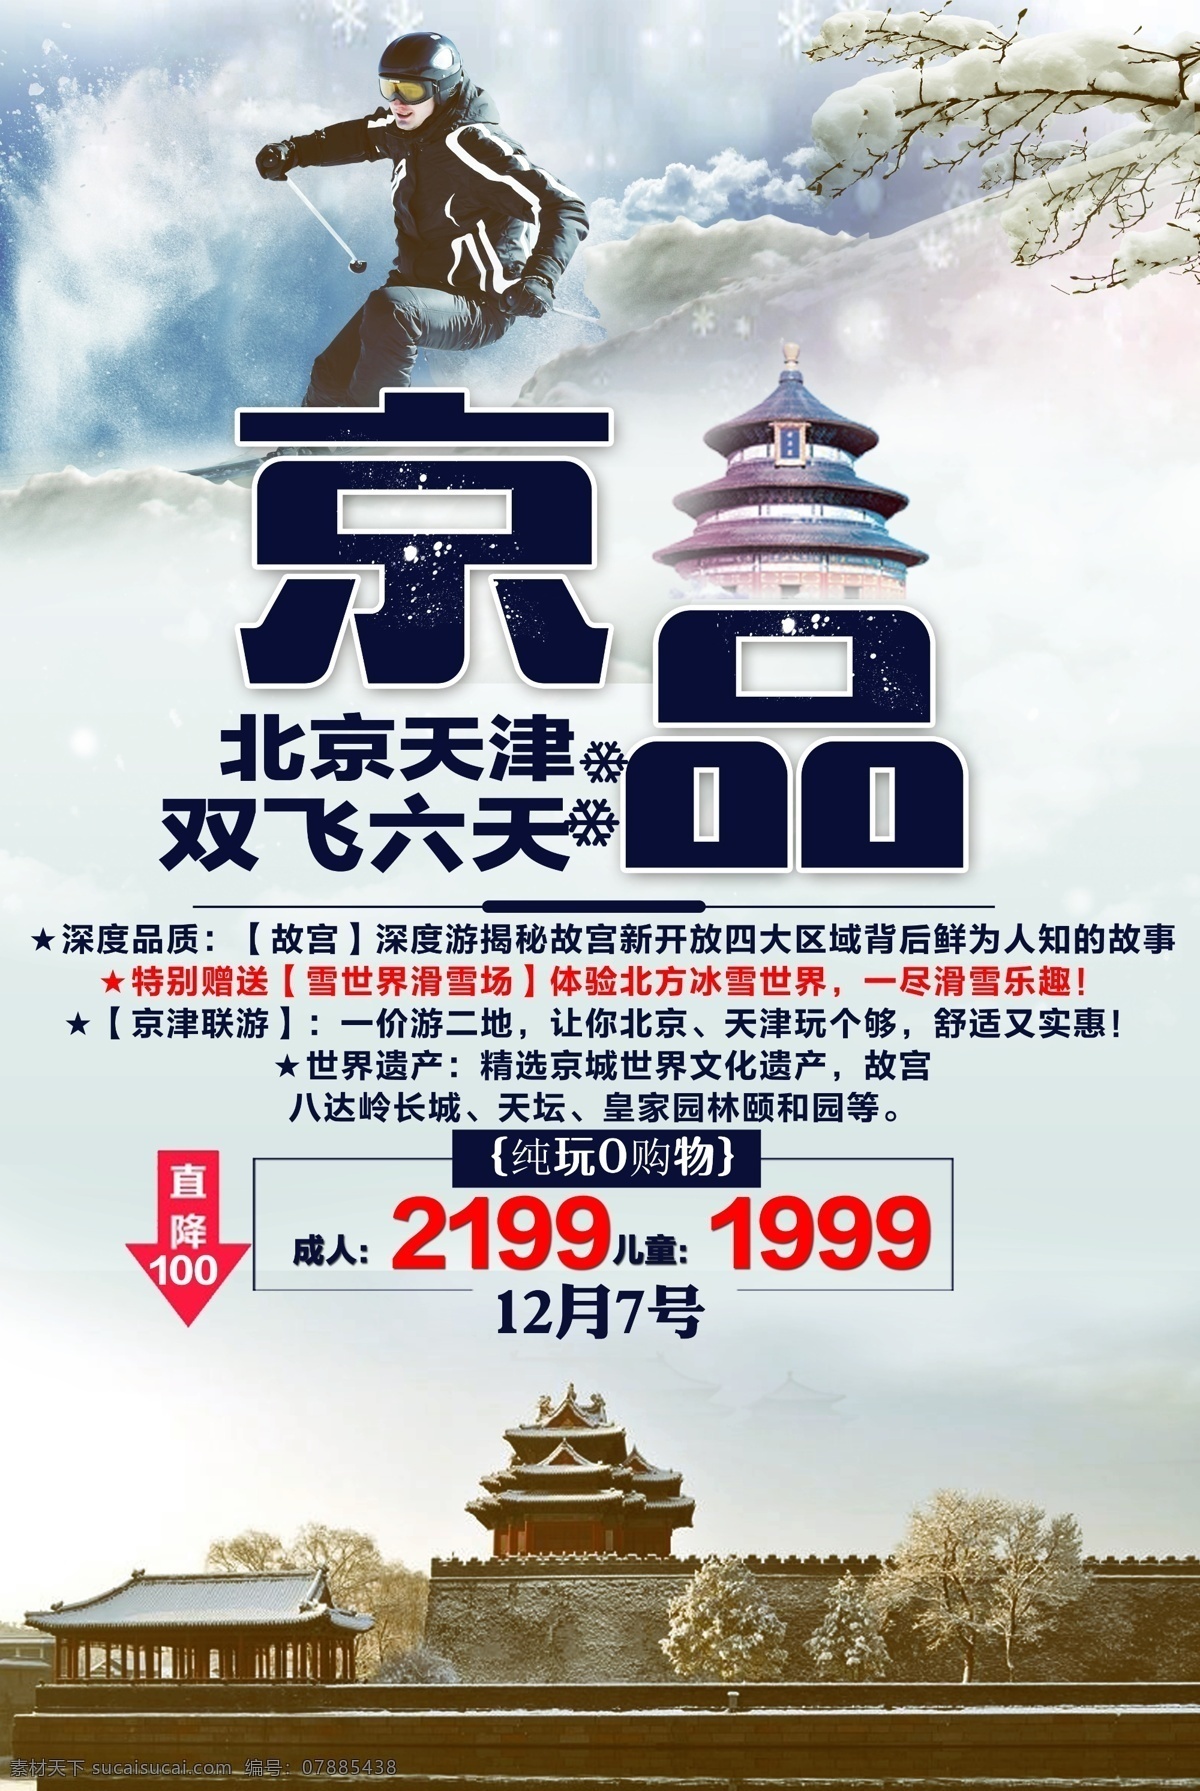 北京 天津 双飞 六日 游 旅游 海报 雪 冬天 滑雪